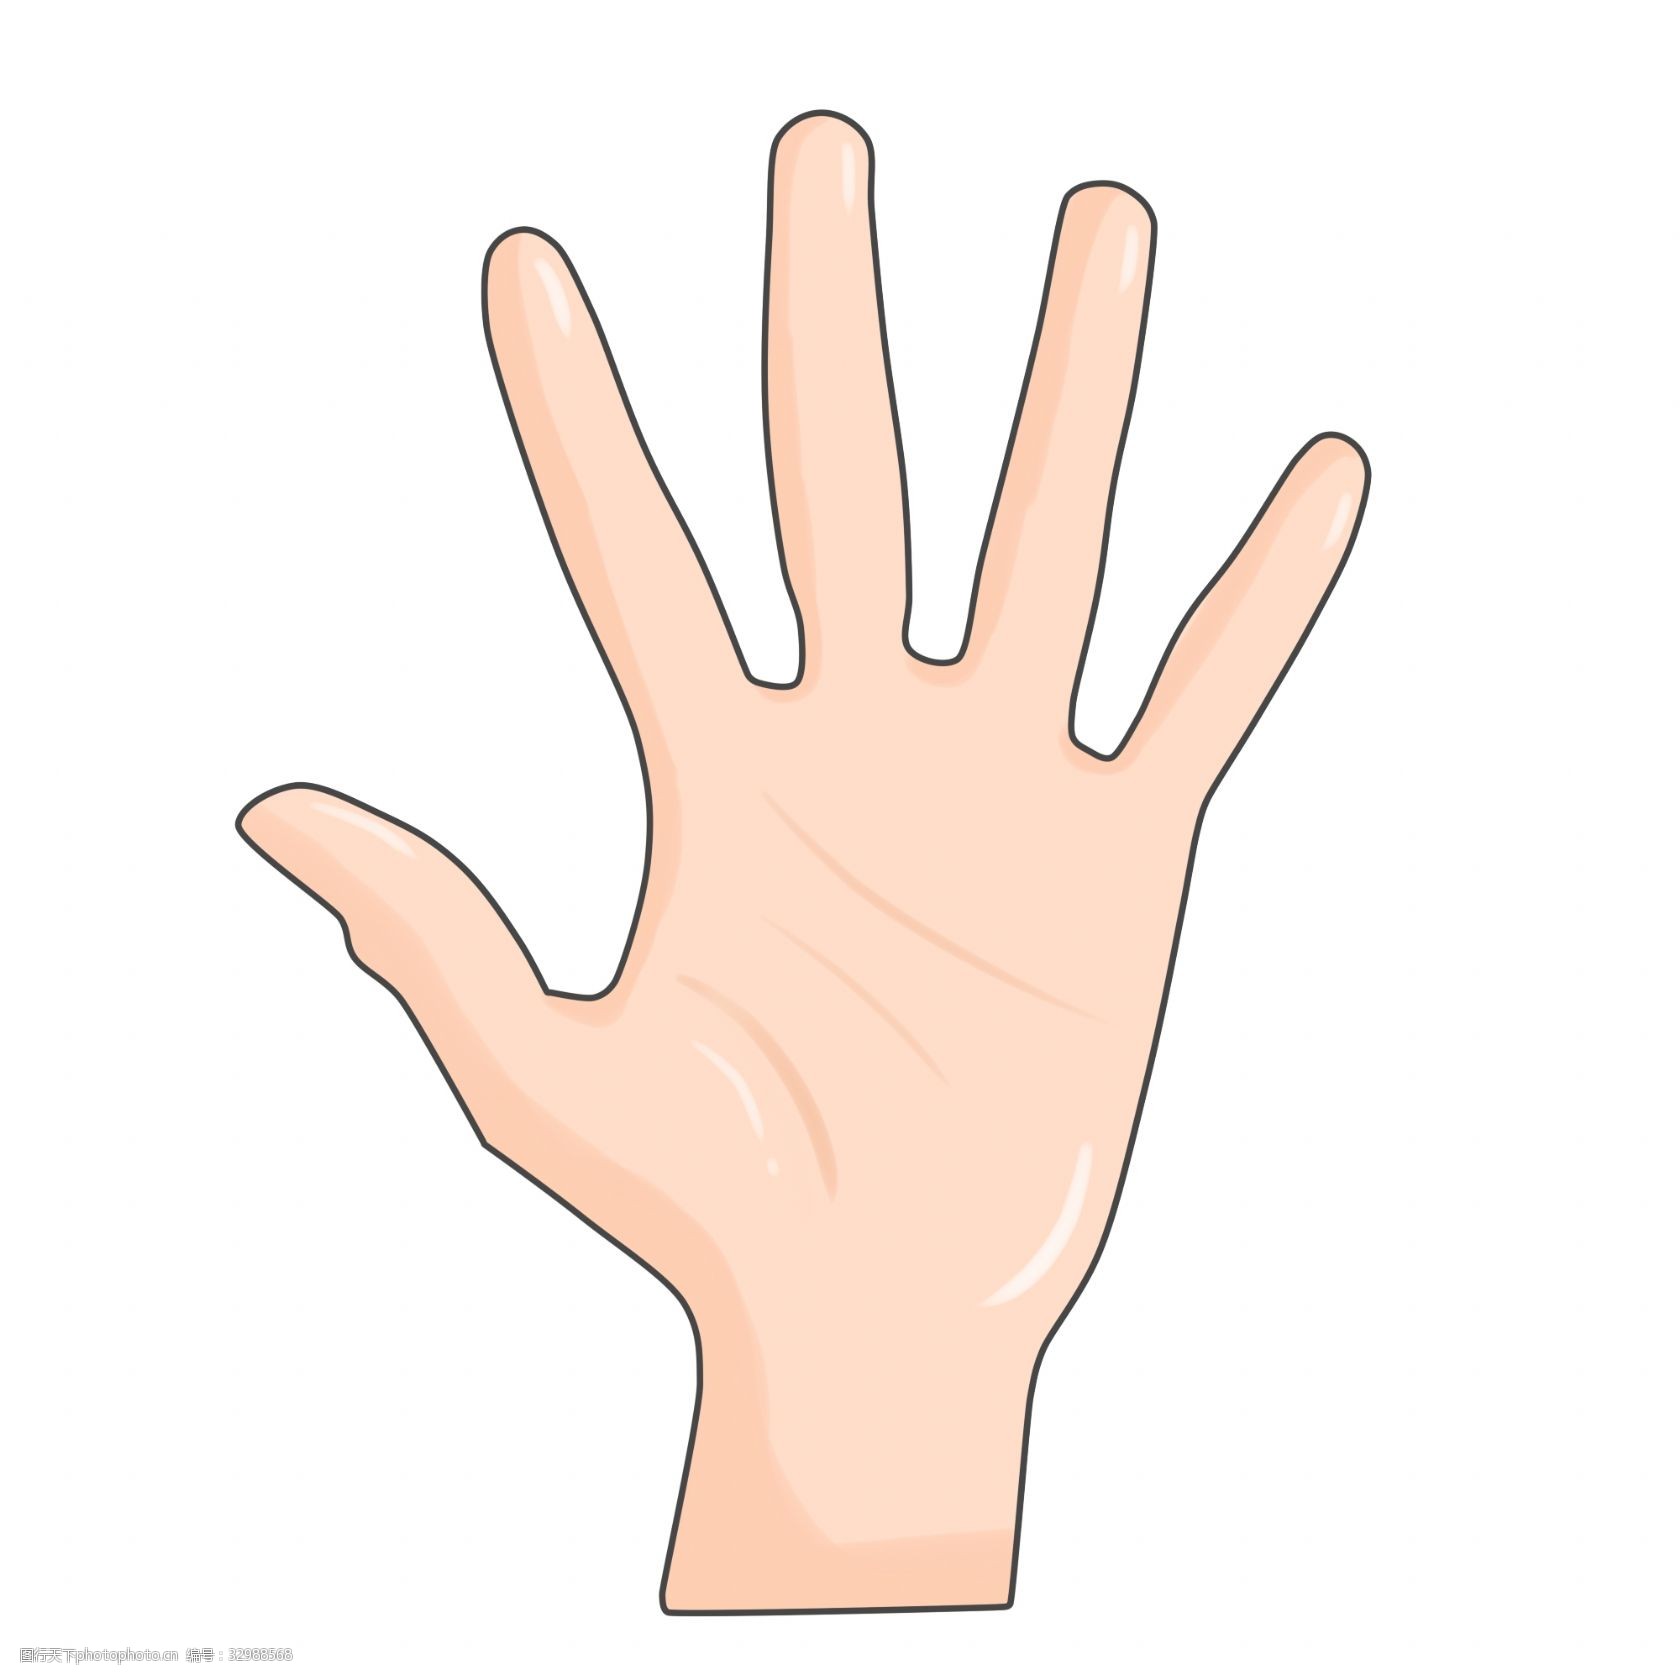 张开的一只手掌插画 五根手指插画 张开的手掌 创意手势插画 一只手